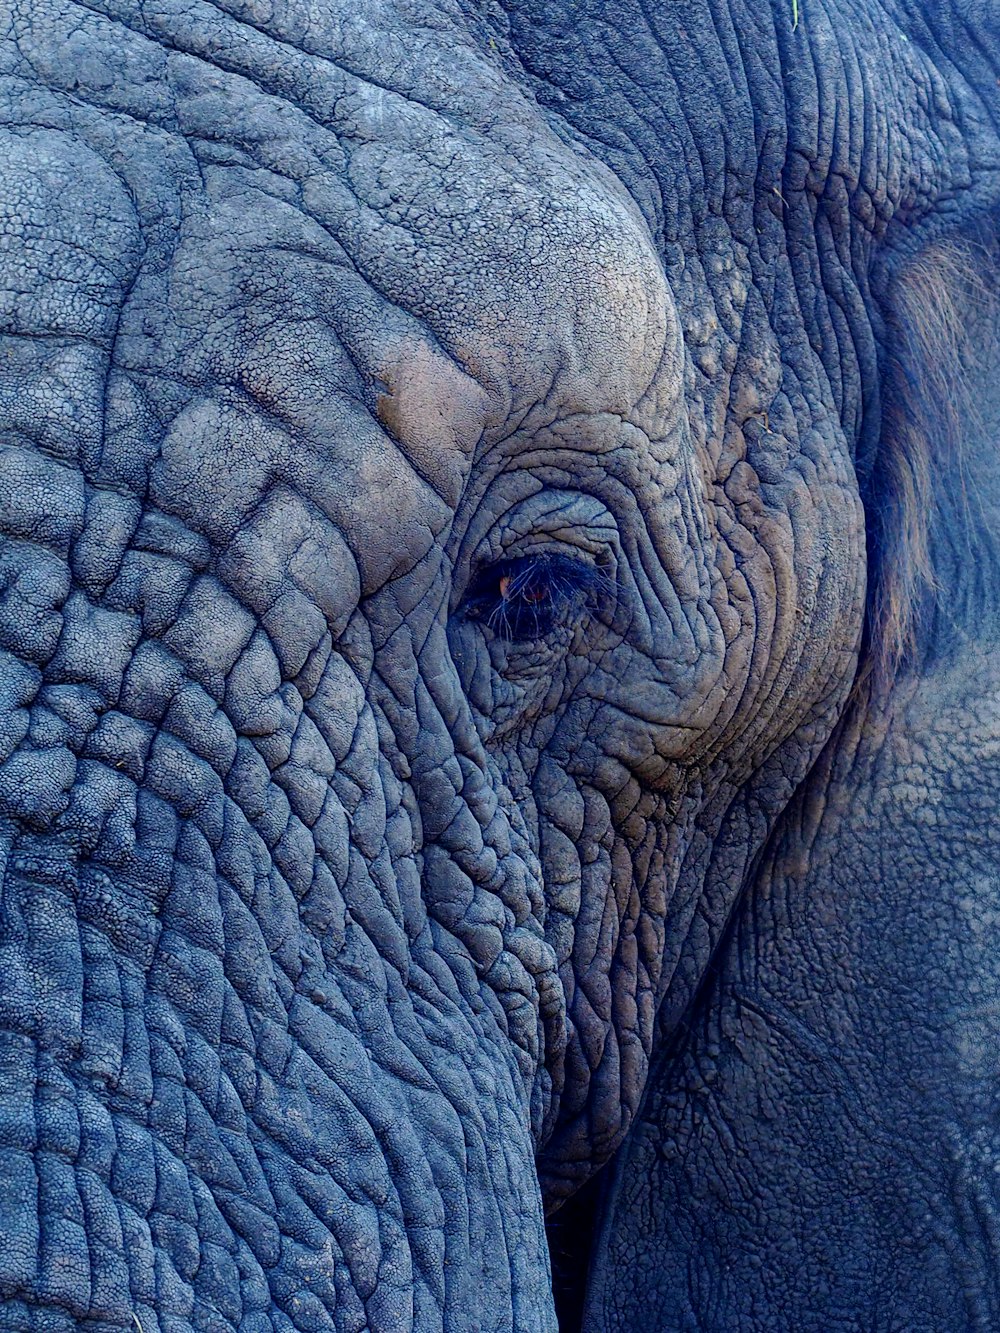 Fotografía macro de la cara del elefante